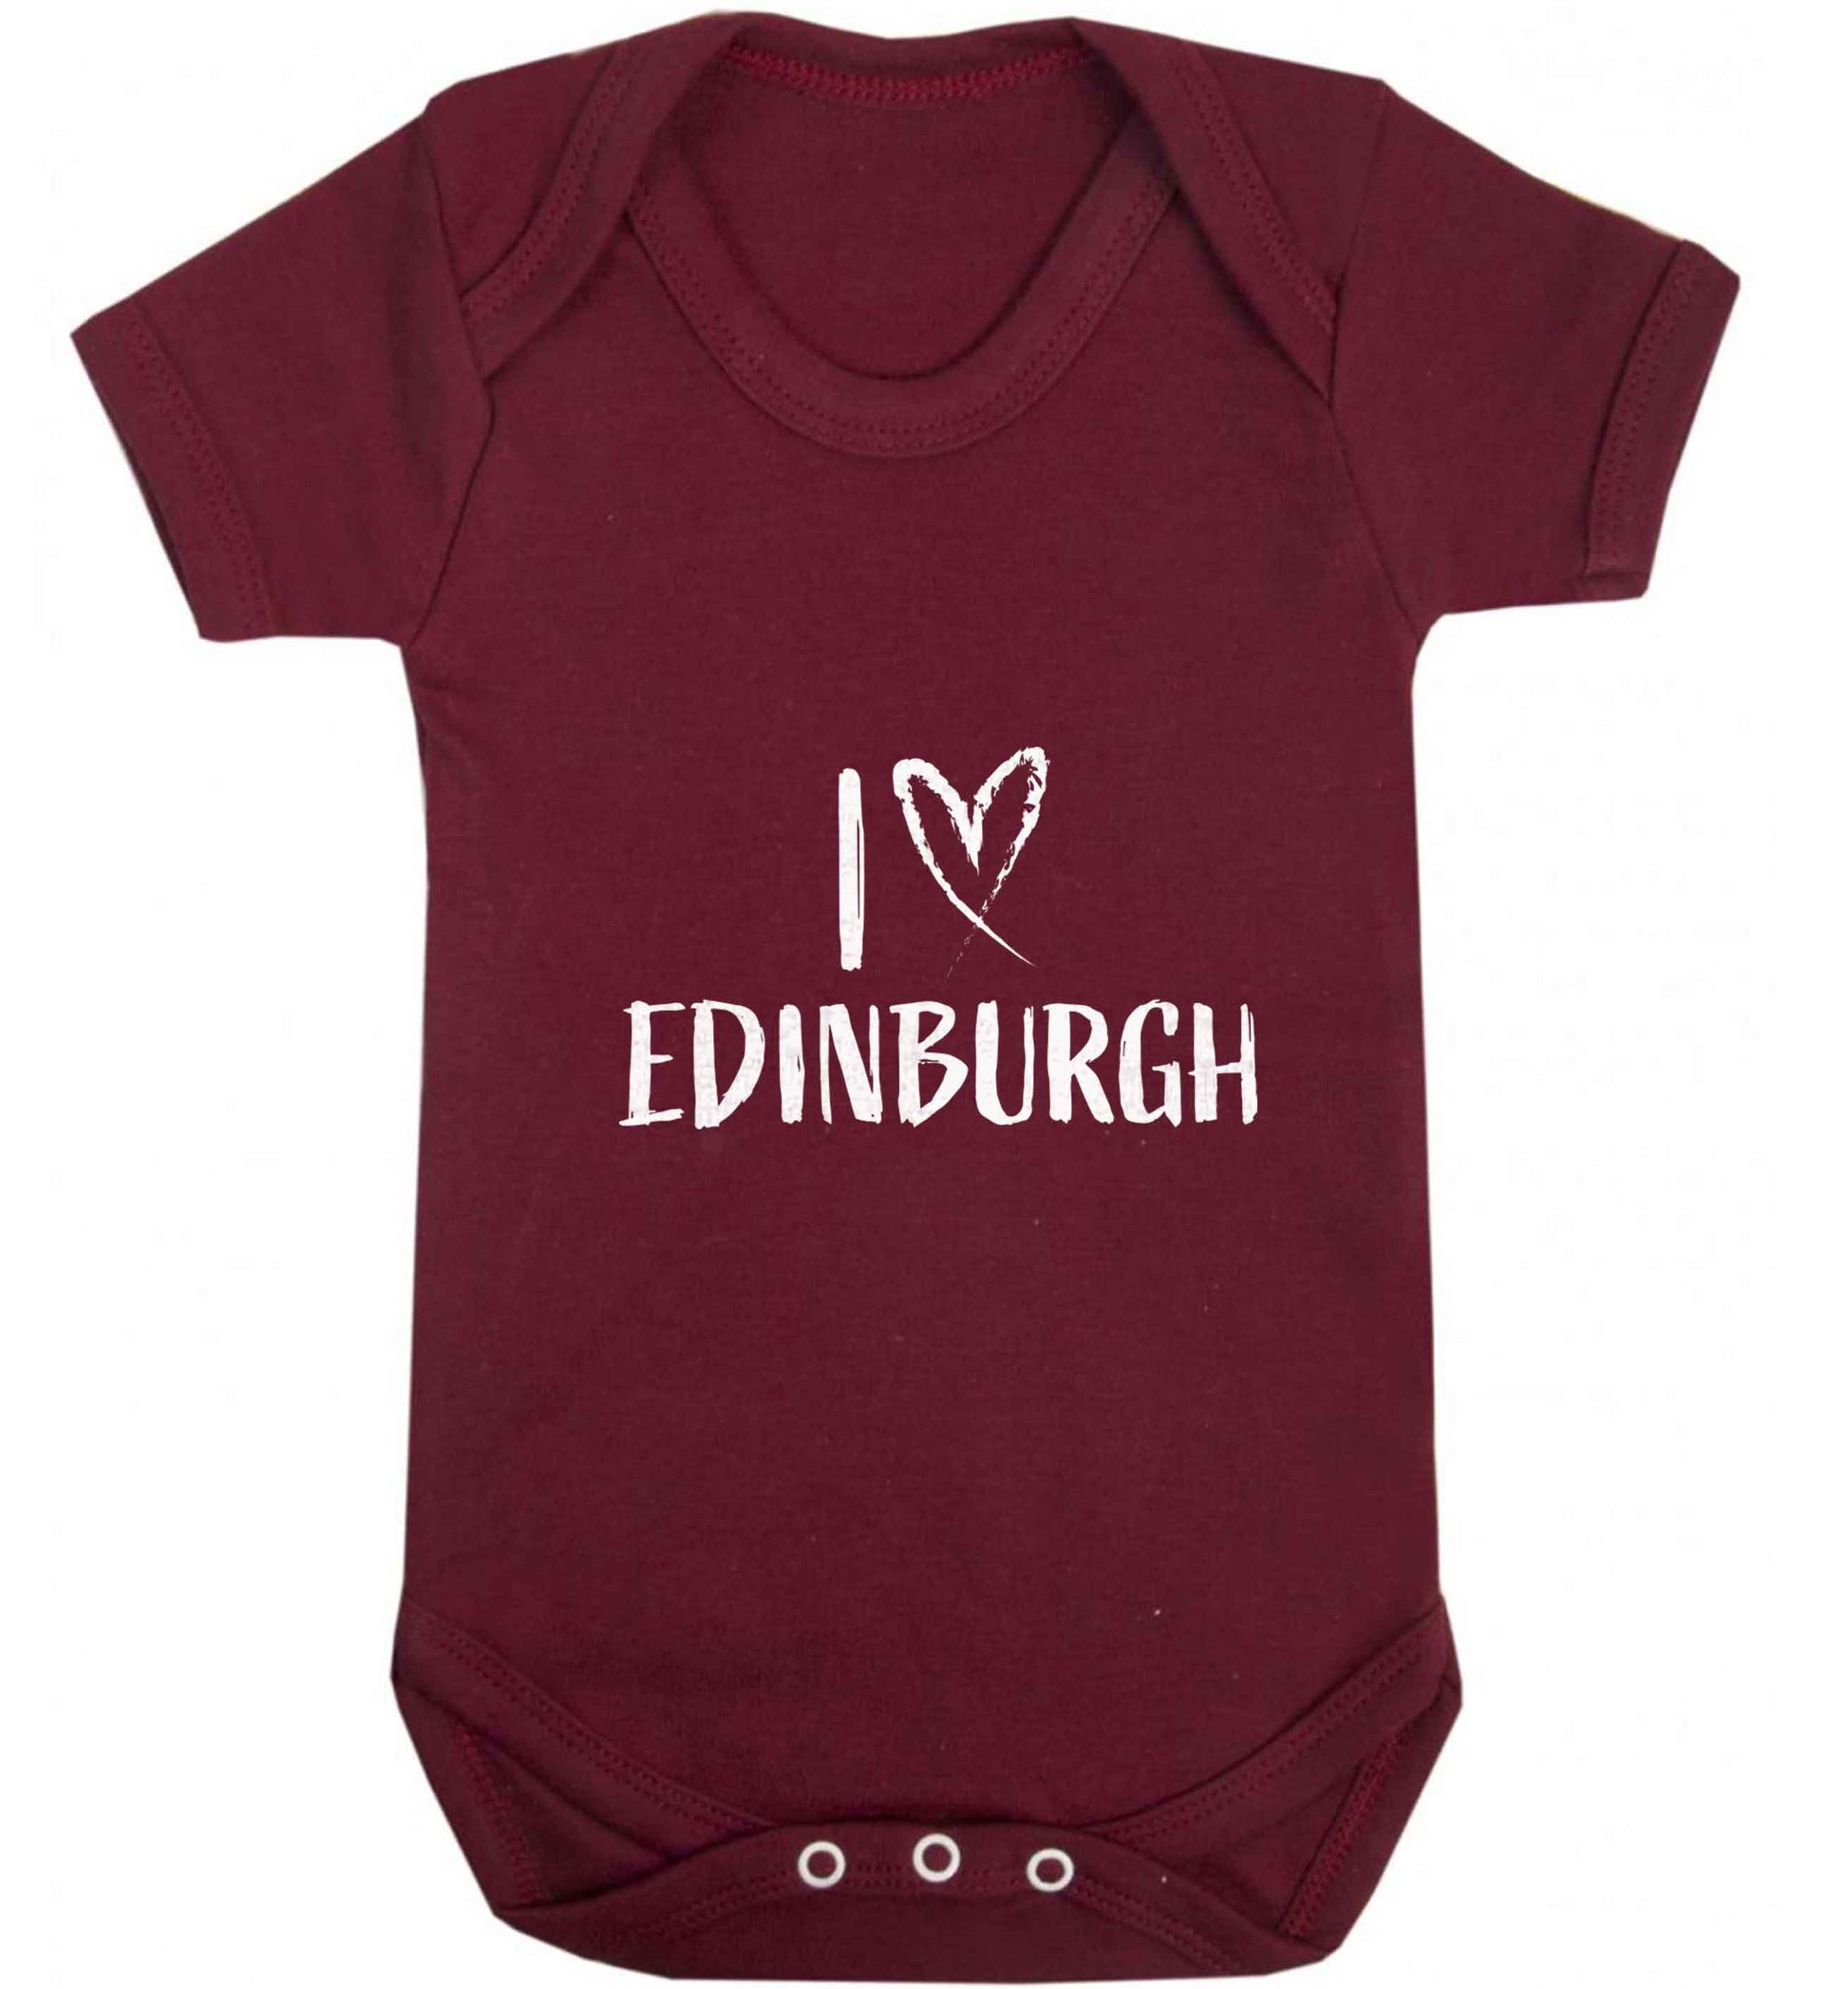 I love Edinburgh baby vest maroon 18-24 months